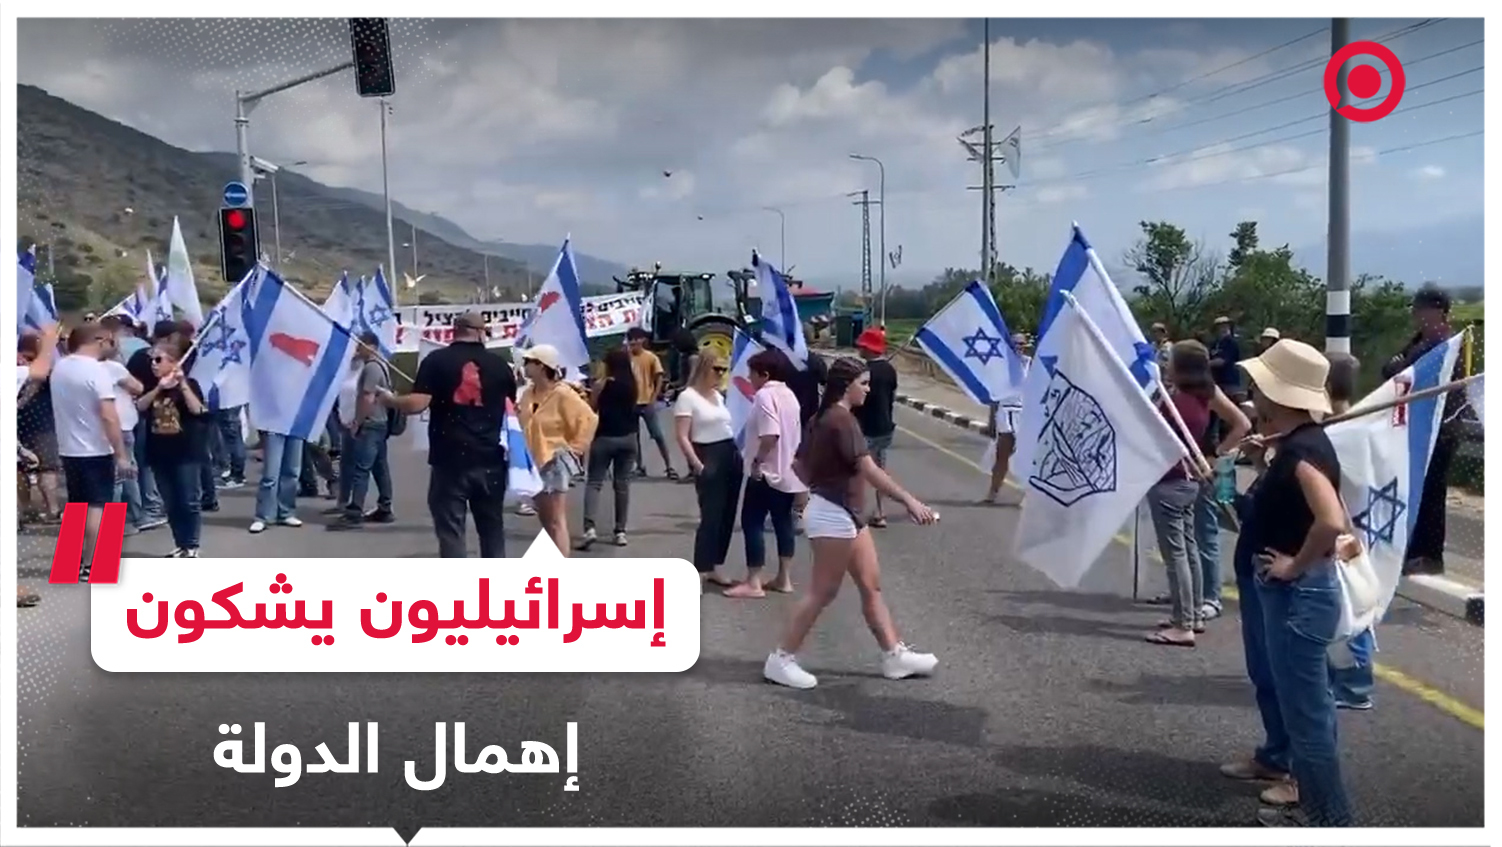 إسرائيليون يغلقون الطرقات احتجاجا على "إهمال الدولة" لهم